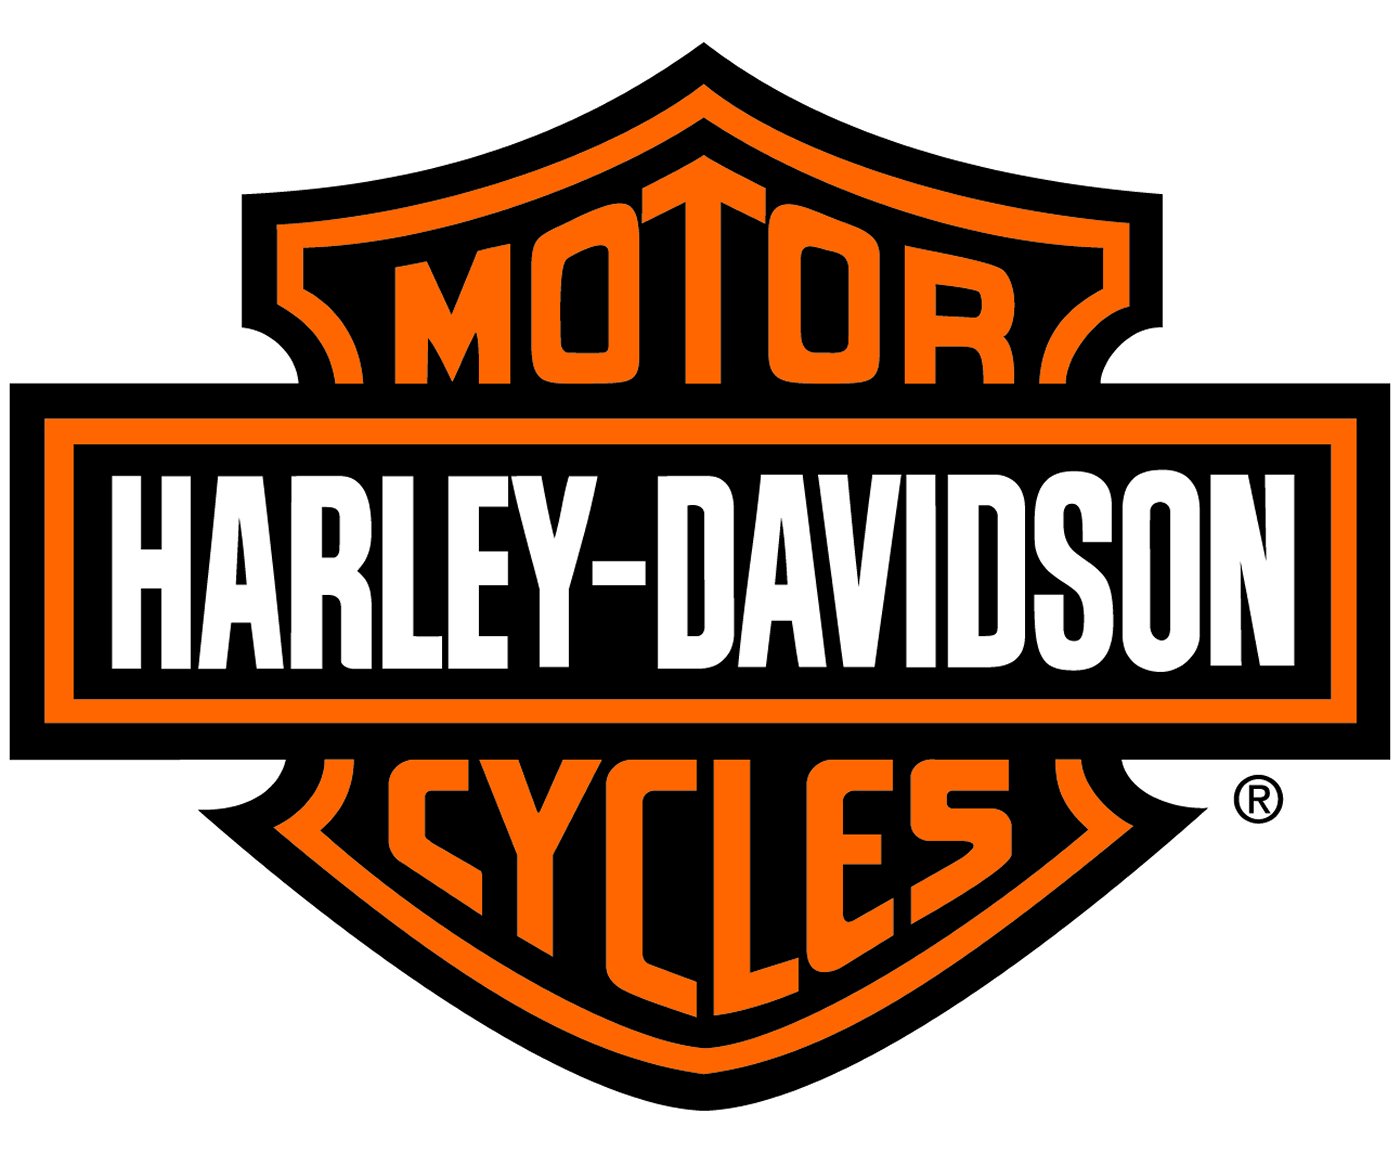 Harley Davidson Logo Outline 292 X 213 8 Kb Jpeg | Top Harley ...